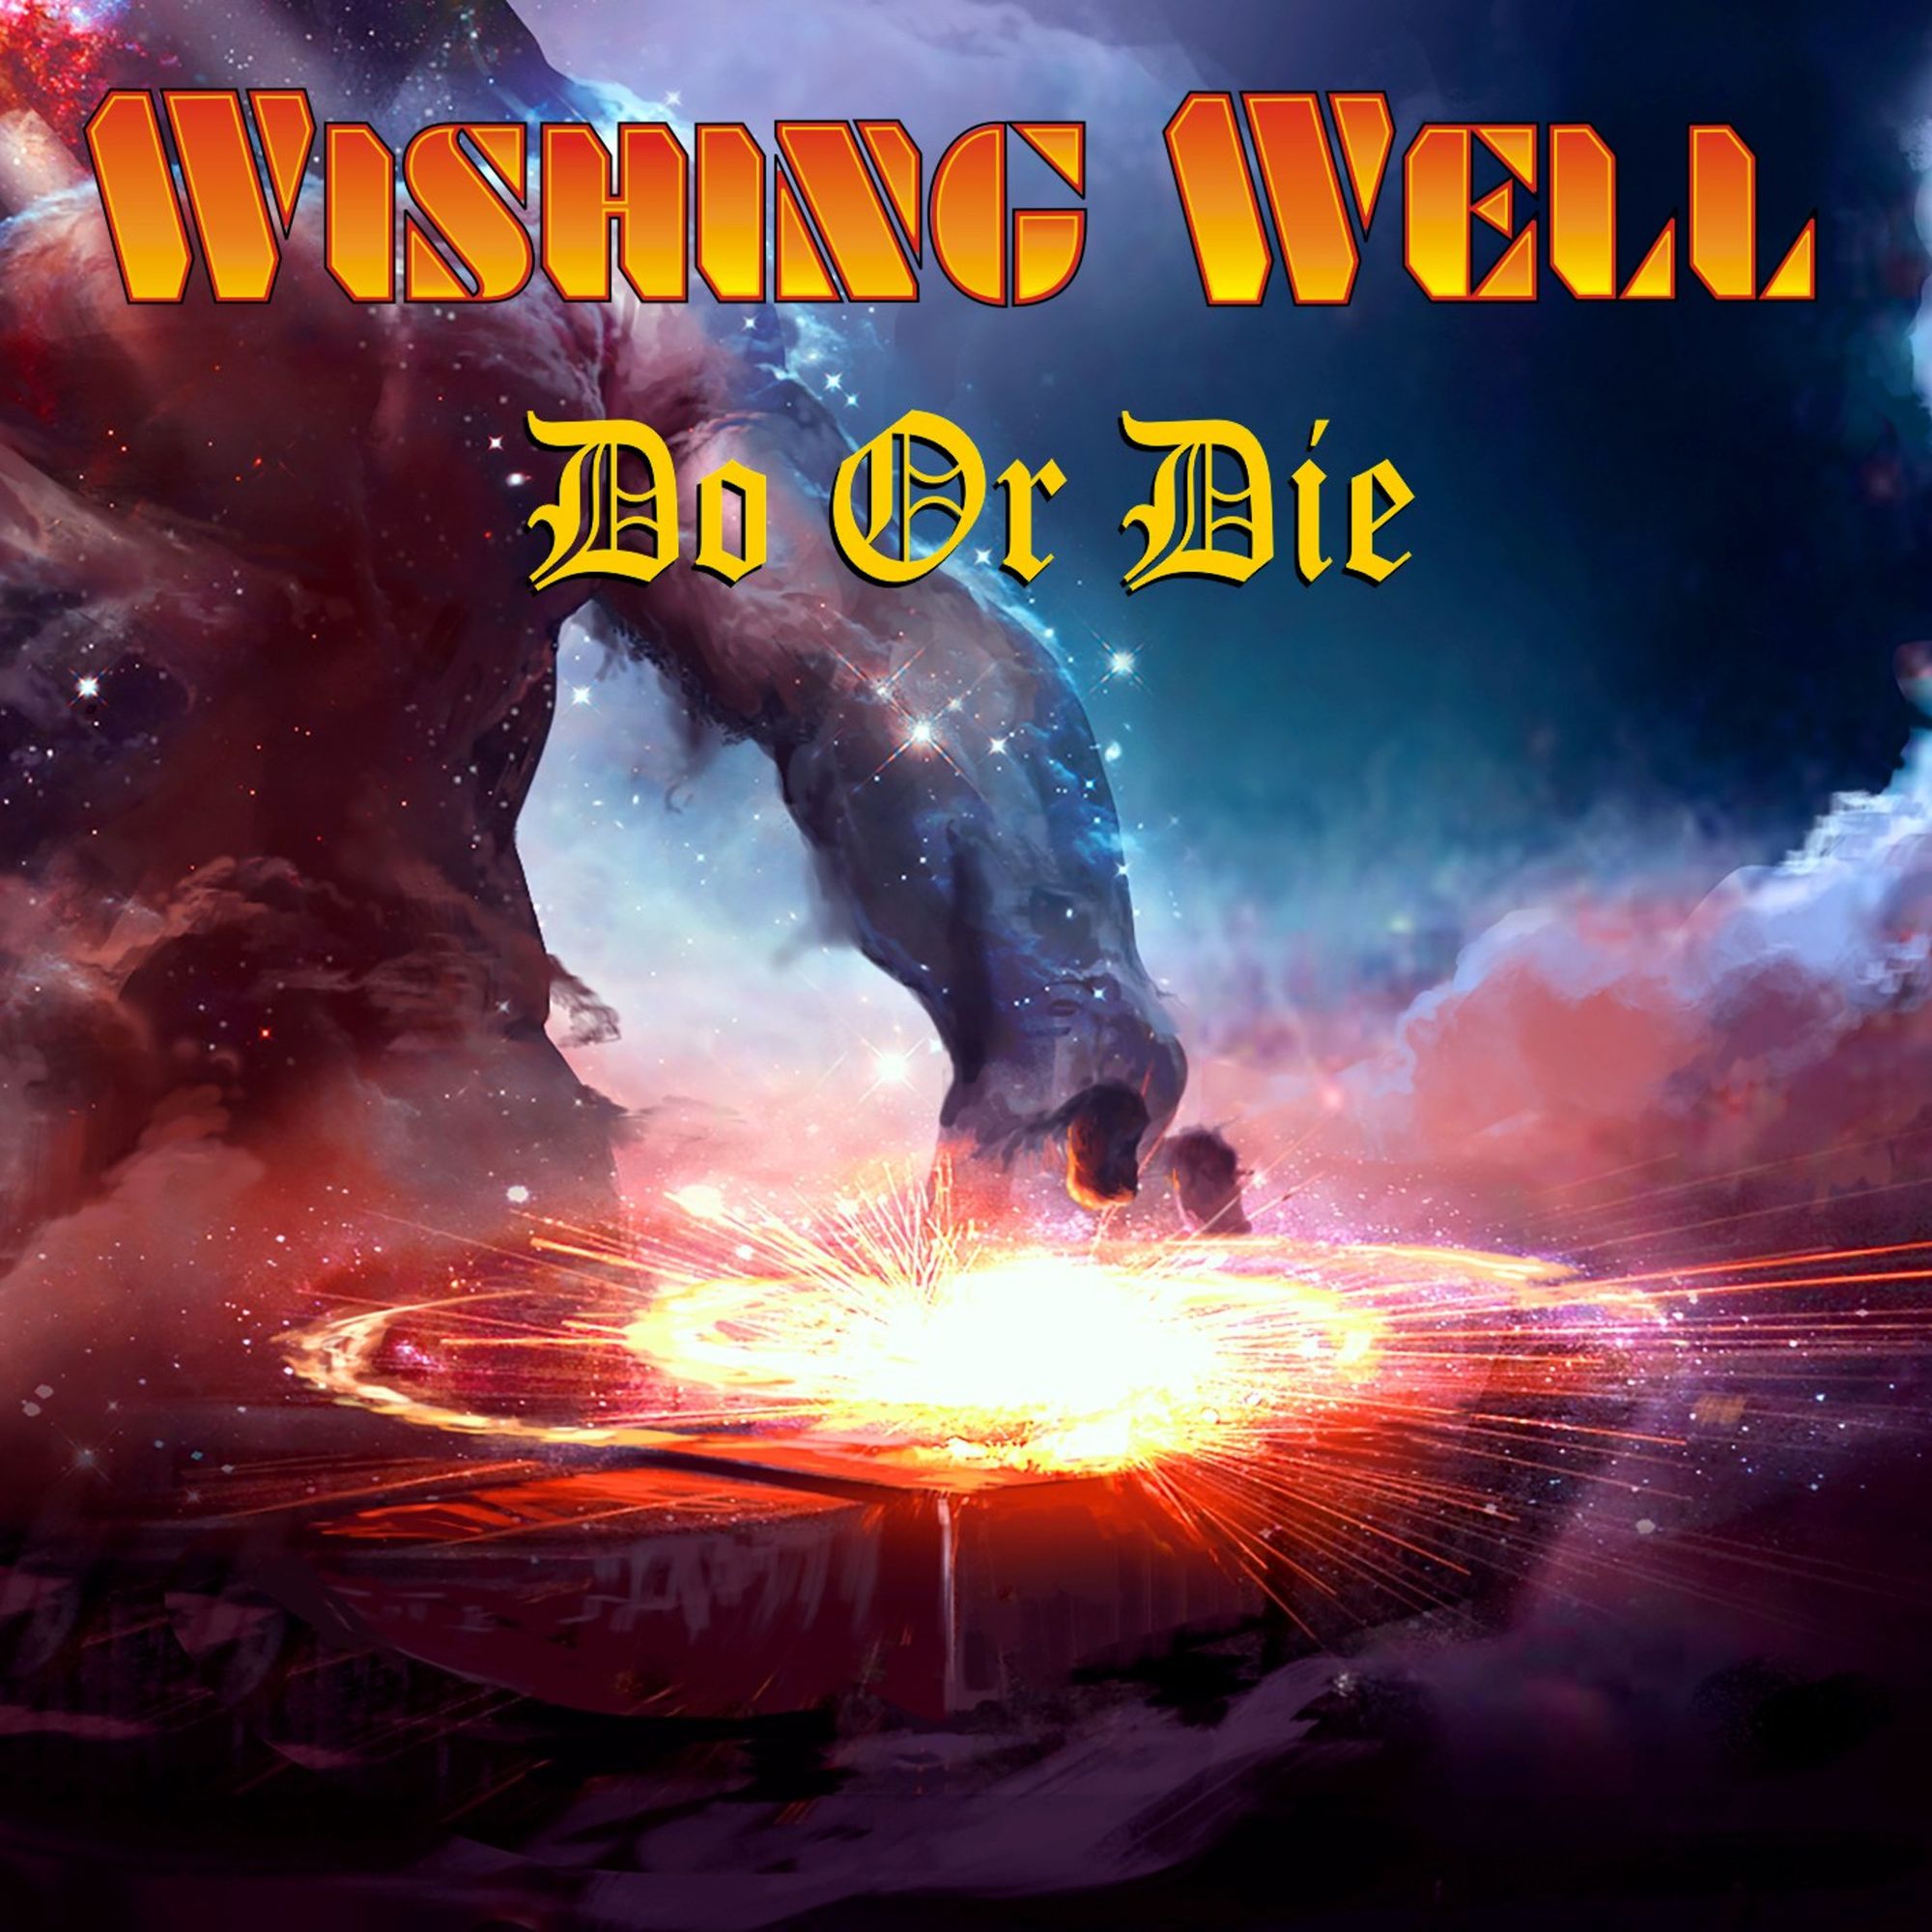 Wishing Well (Heavy Metal)